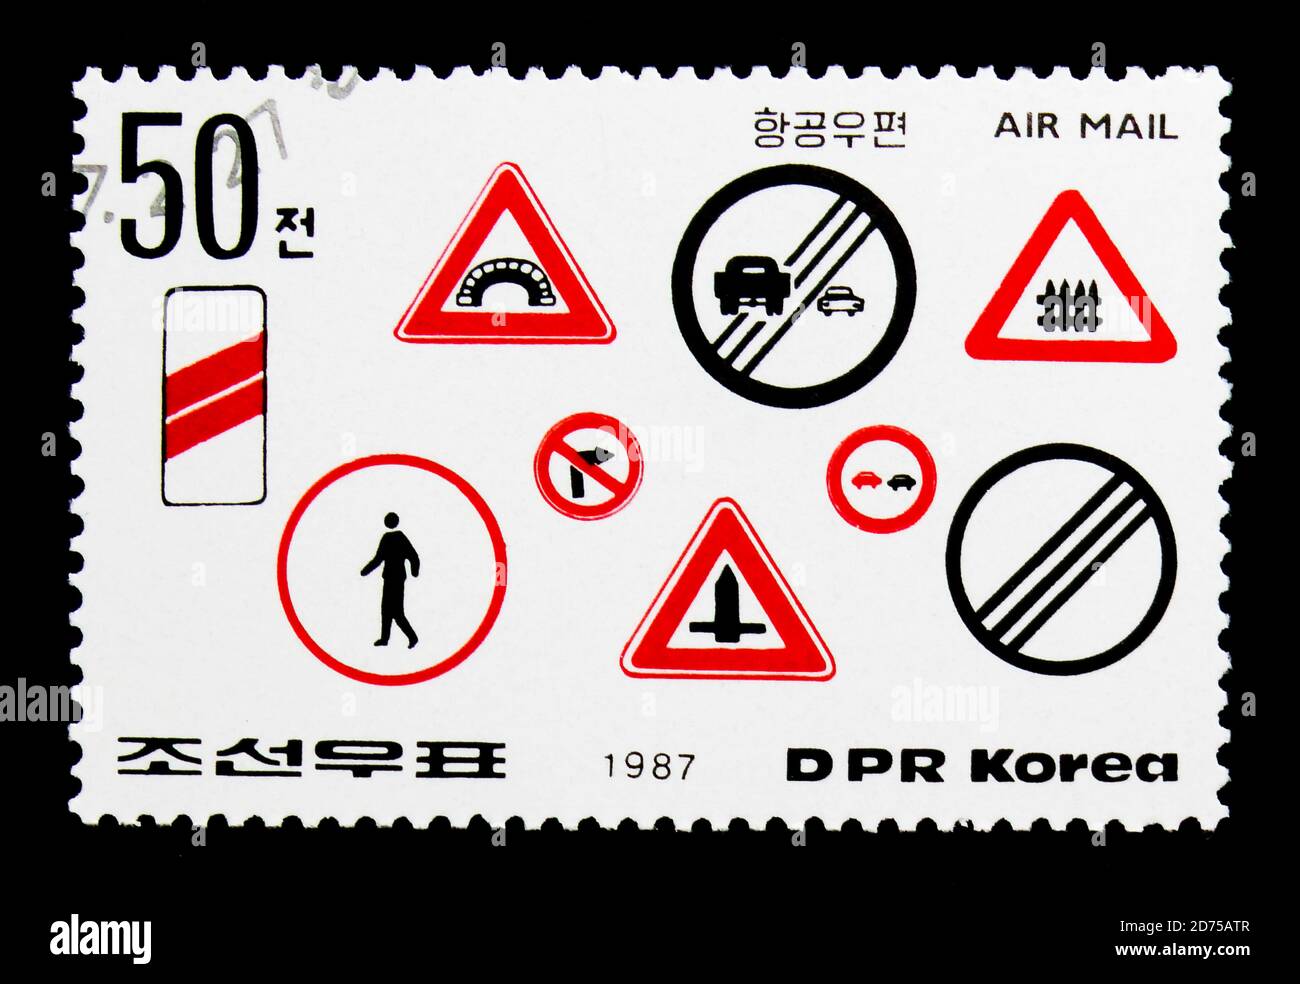 MOSCOU, RUSSIE - 25 NOVEMBRE 2017 : un timbre imprimé en république populaire démocratique de Corée montre divers panneaux routiers 2, série sécurité routière, vers 1987 Banque D'Images